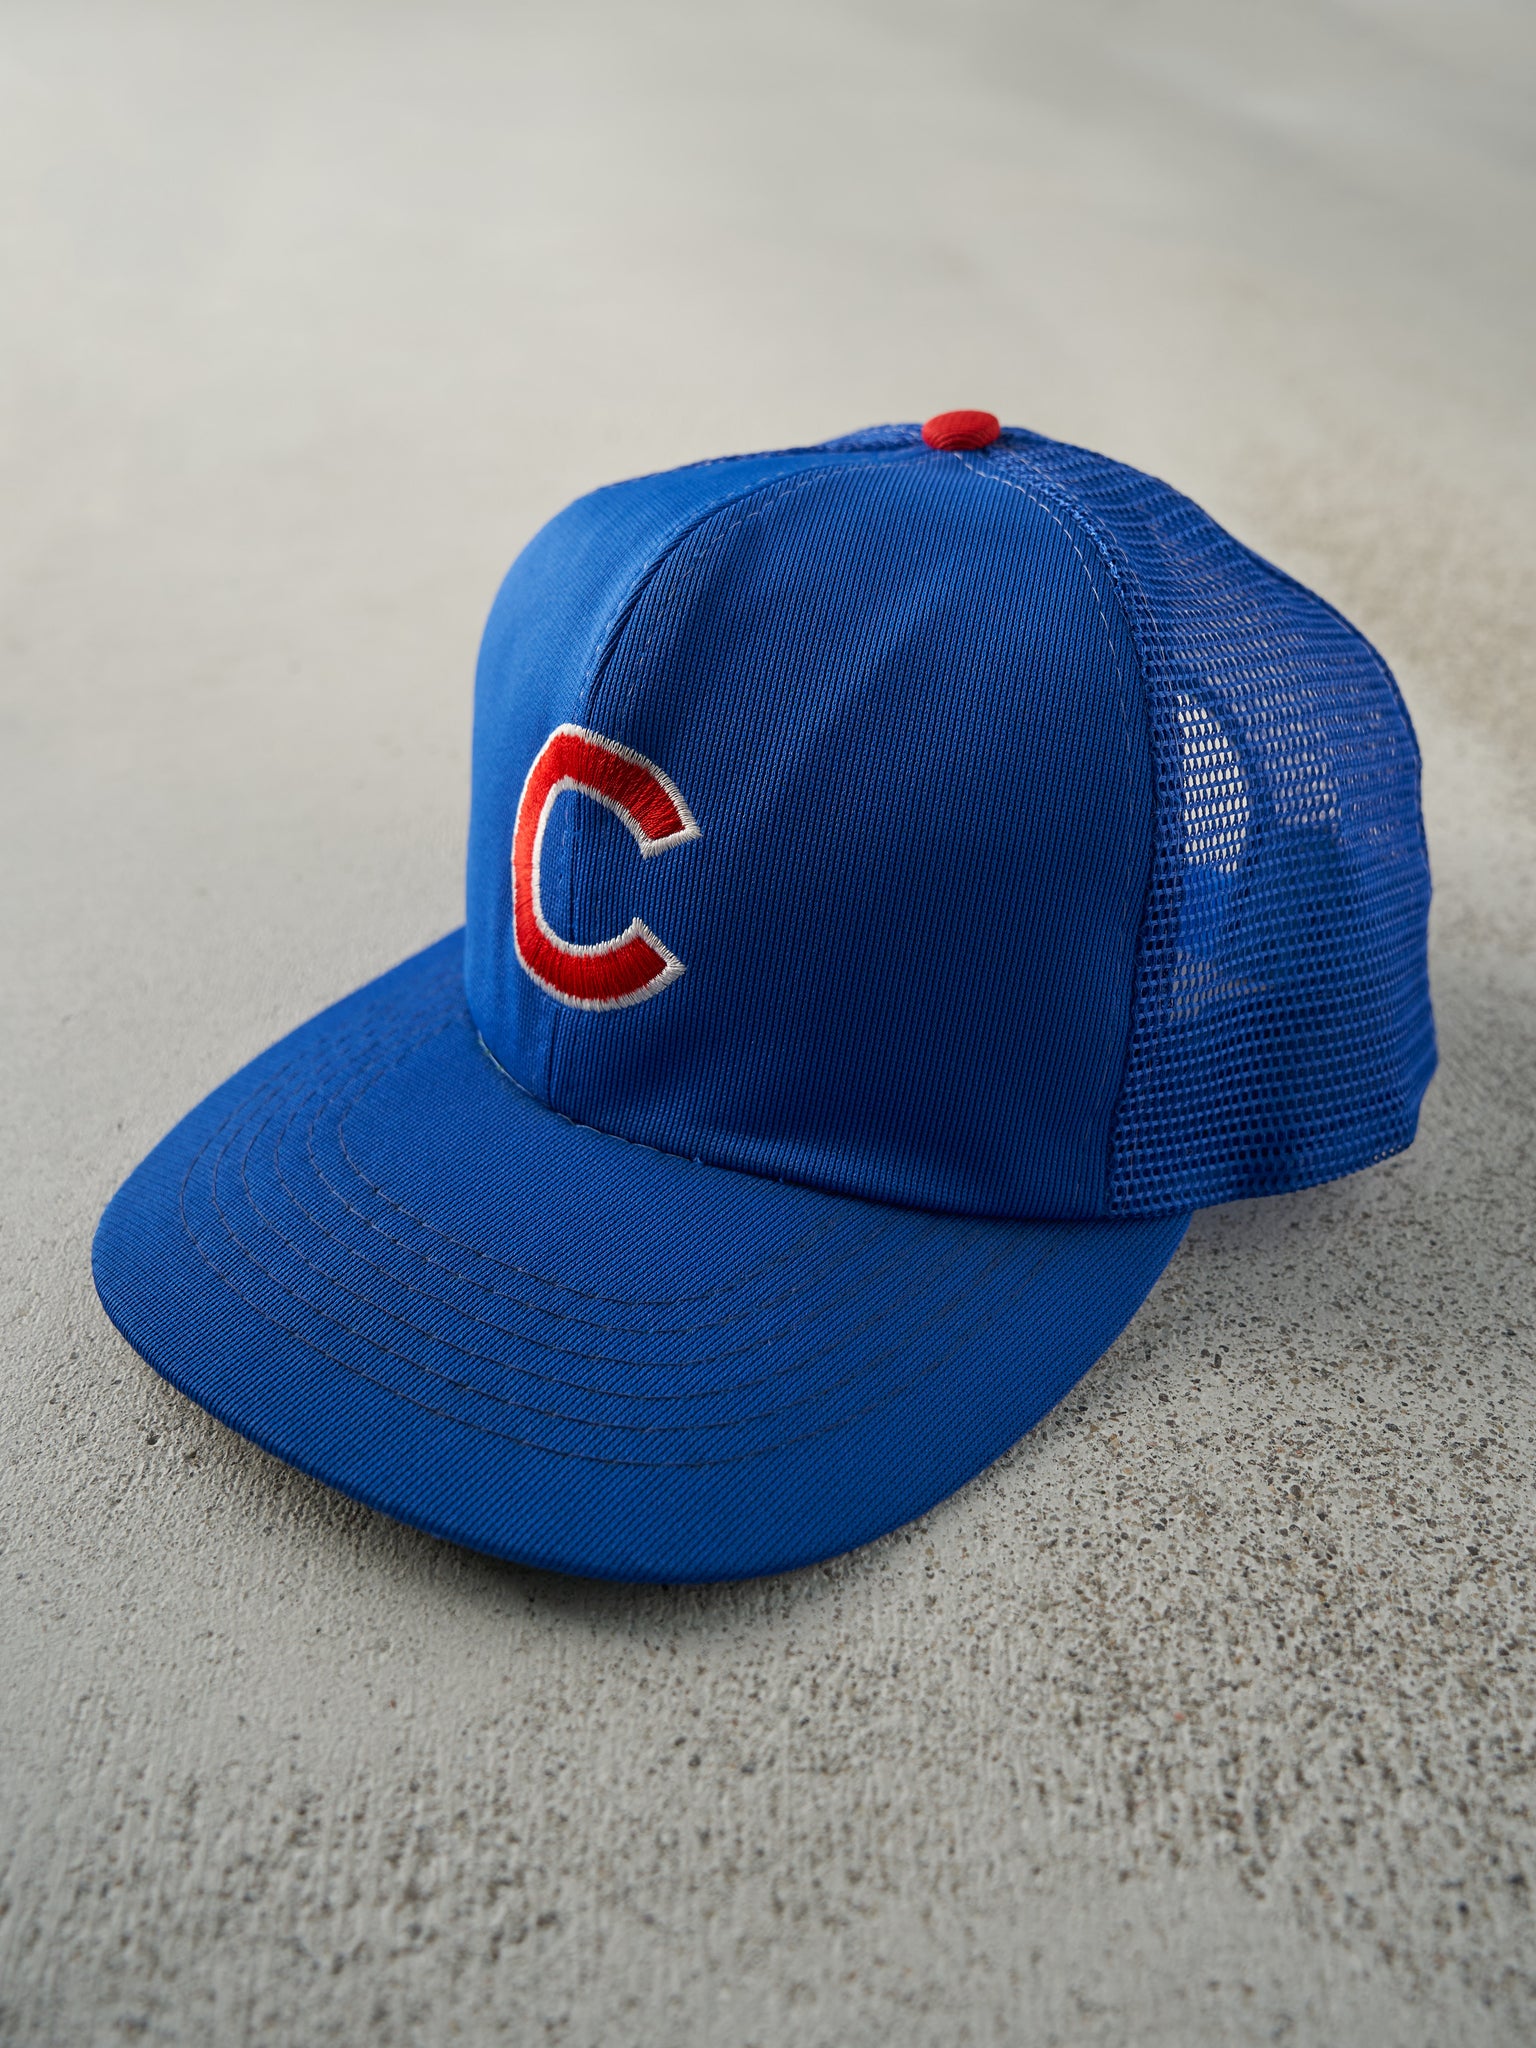 Vintage 90s Royal Blue Chicago Cubs Trucker Hat